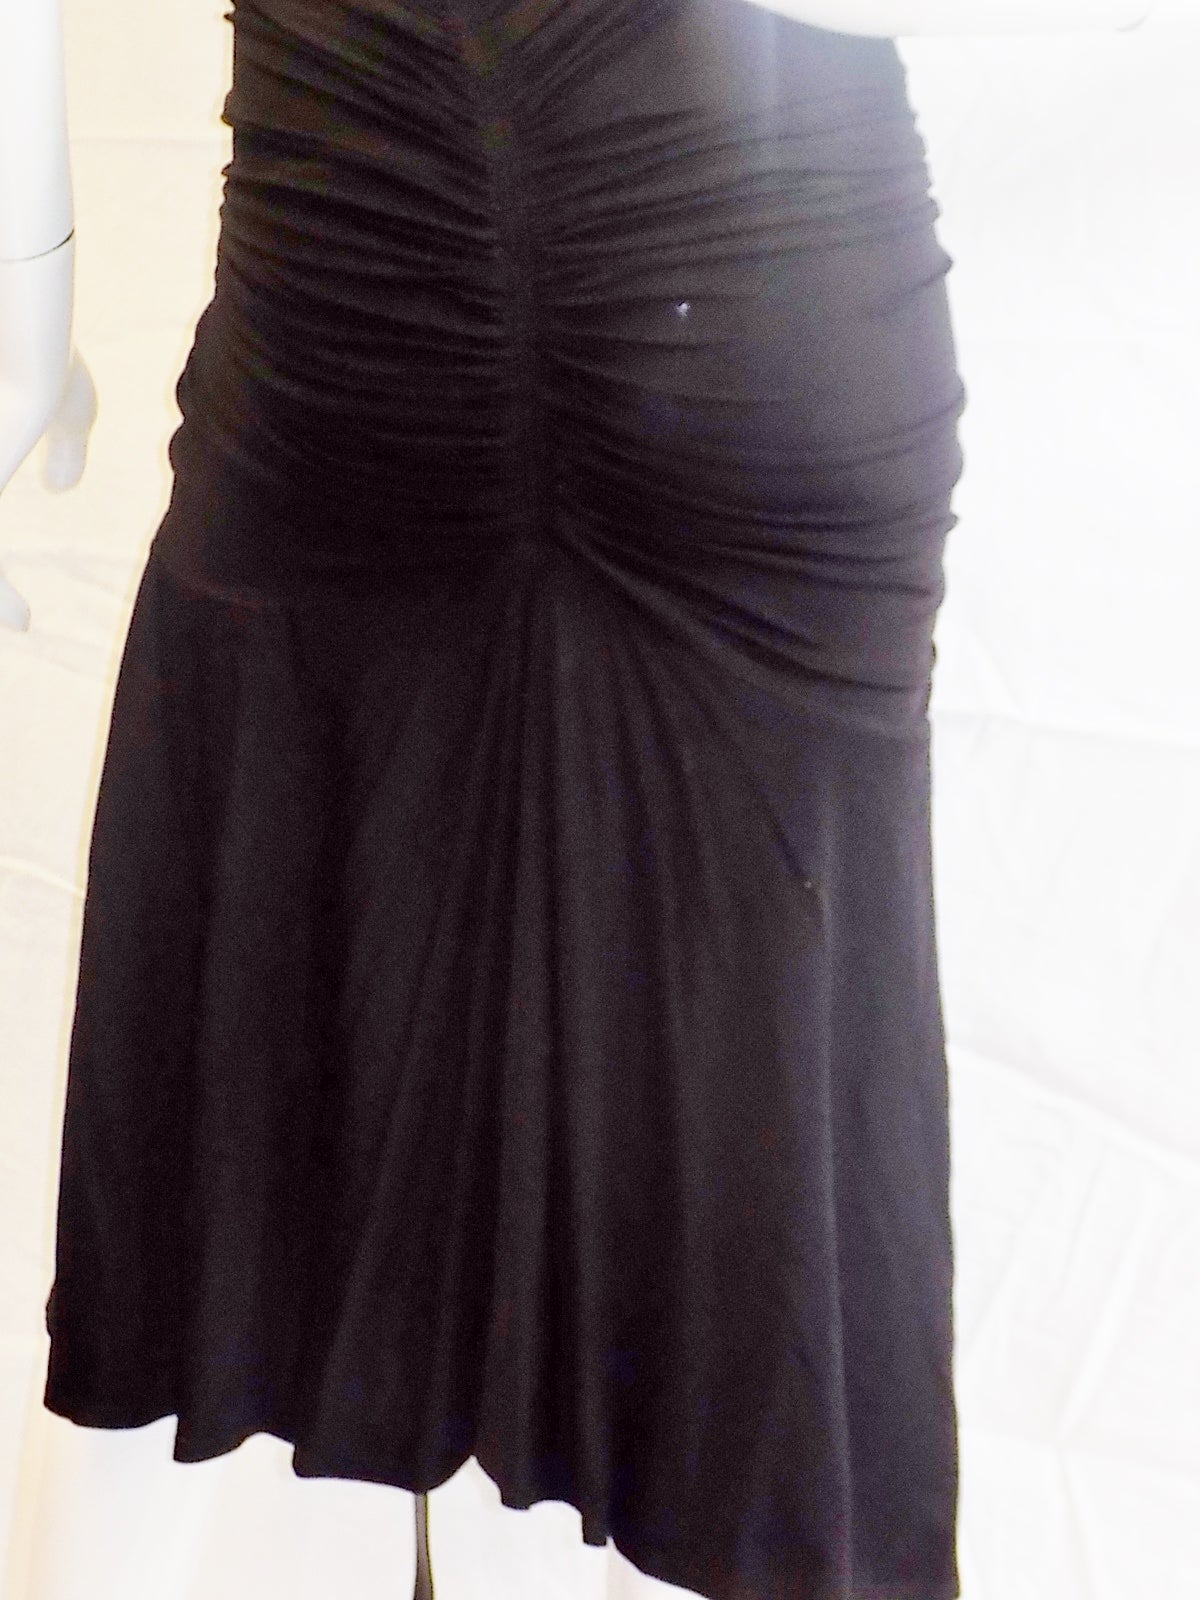 Donna Karan Vintage halter  black cocktail dress with leather long wrap belts 3